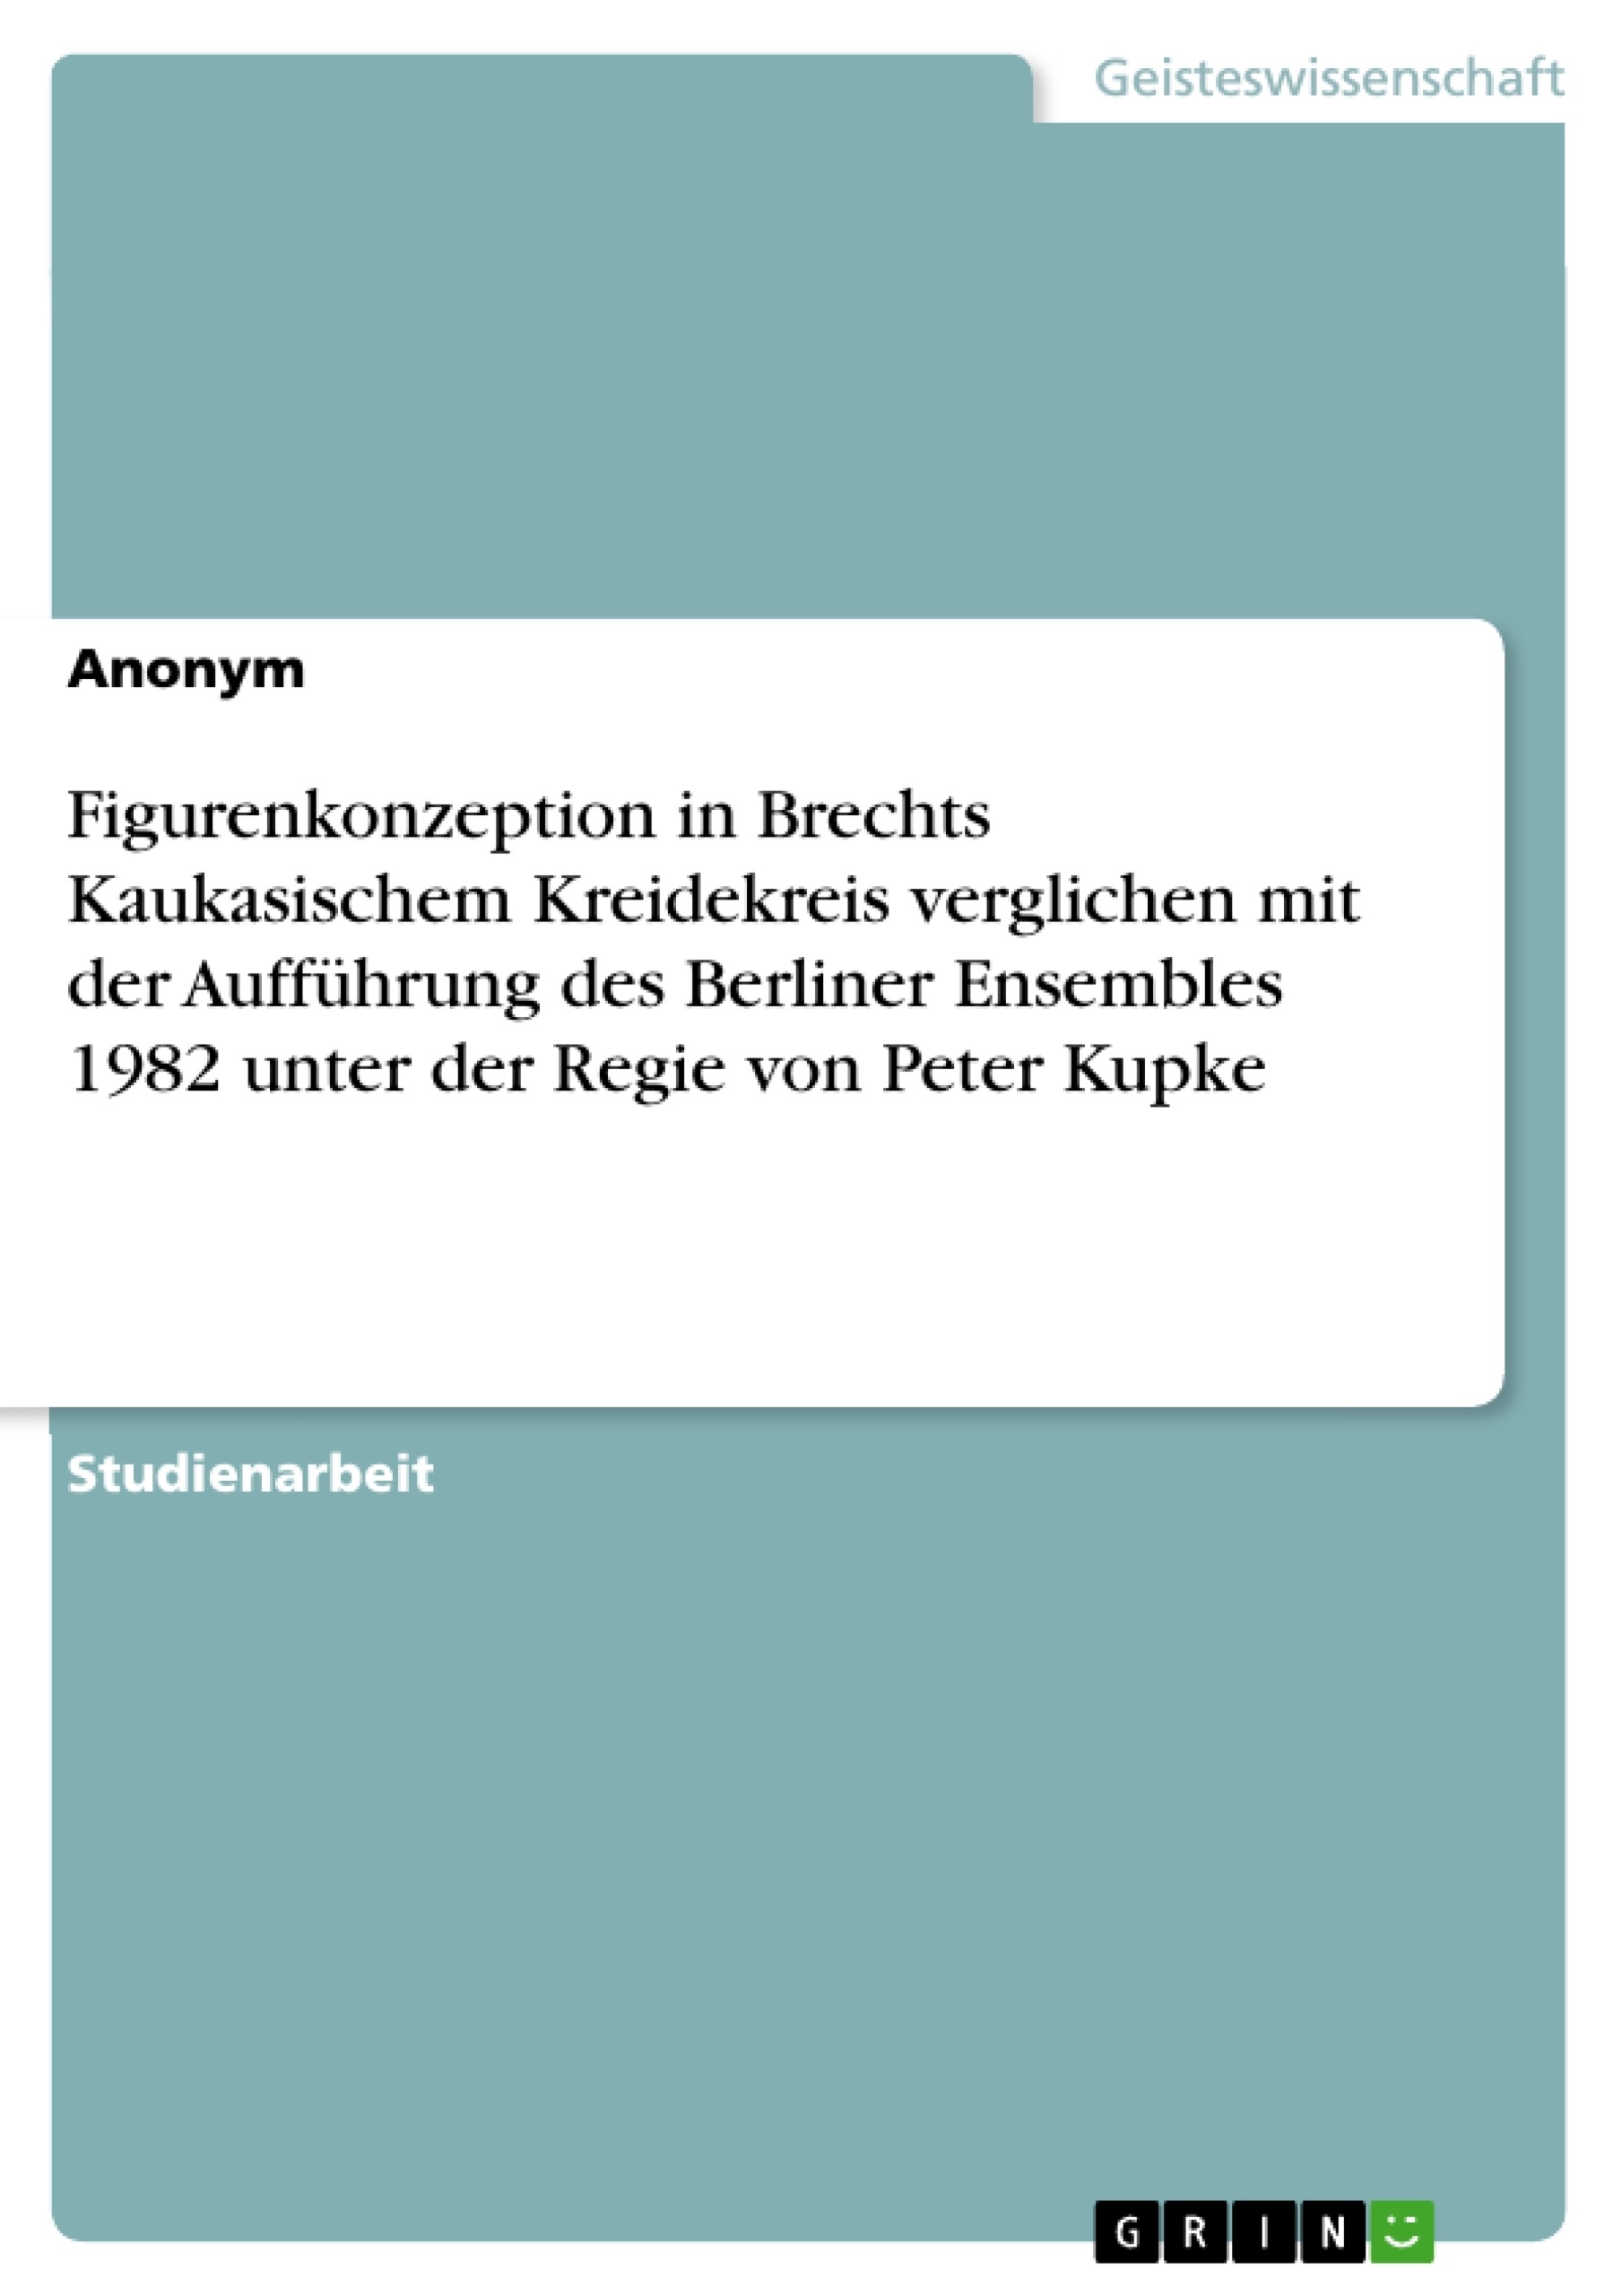 Título: Figurenkonzeption in Brechts Kaukasischem Kreidekreis verglichen mit der Aufführung des Berliner Ensembles 1982 unter der Regie von Peter Kupke